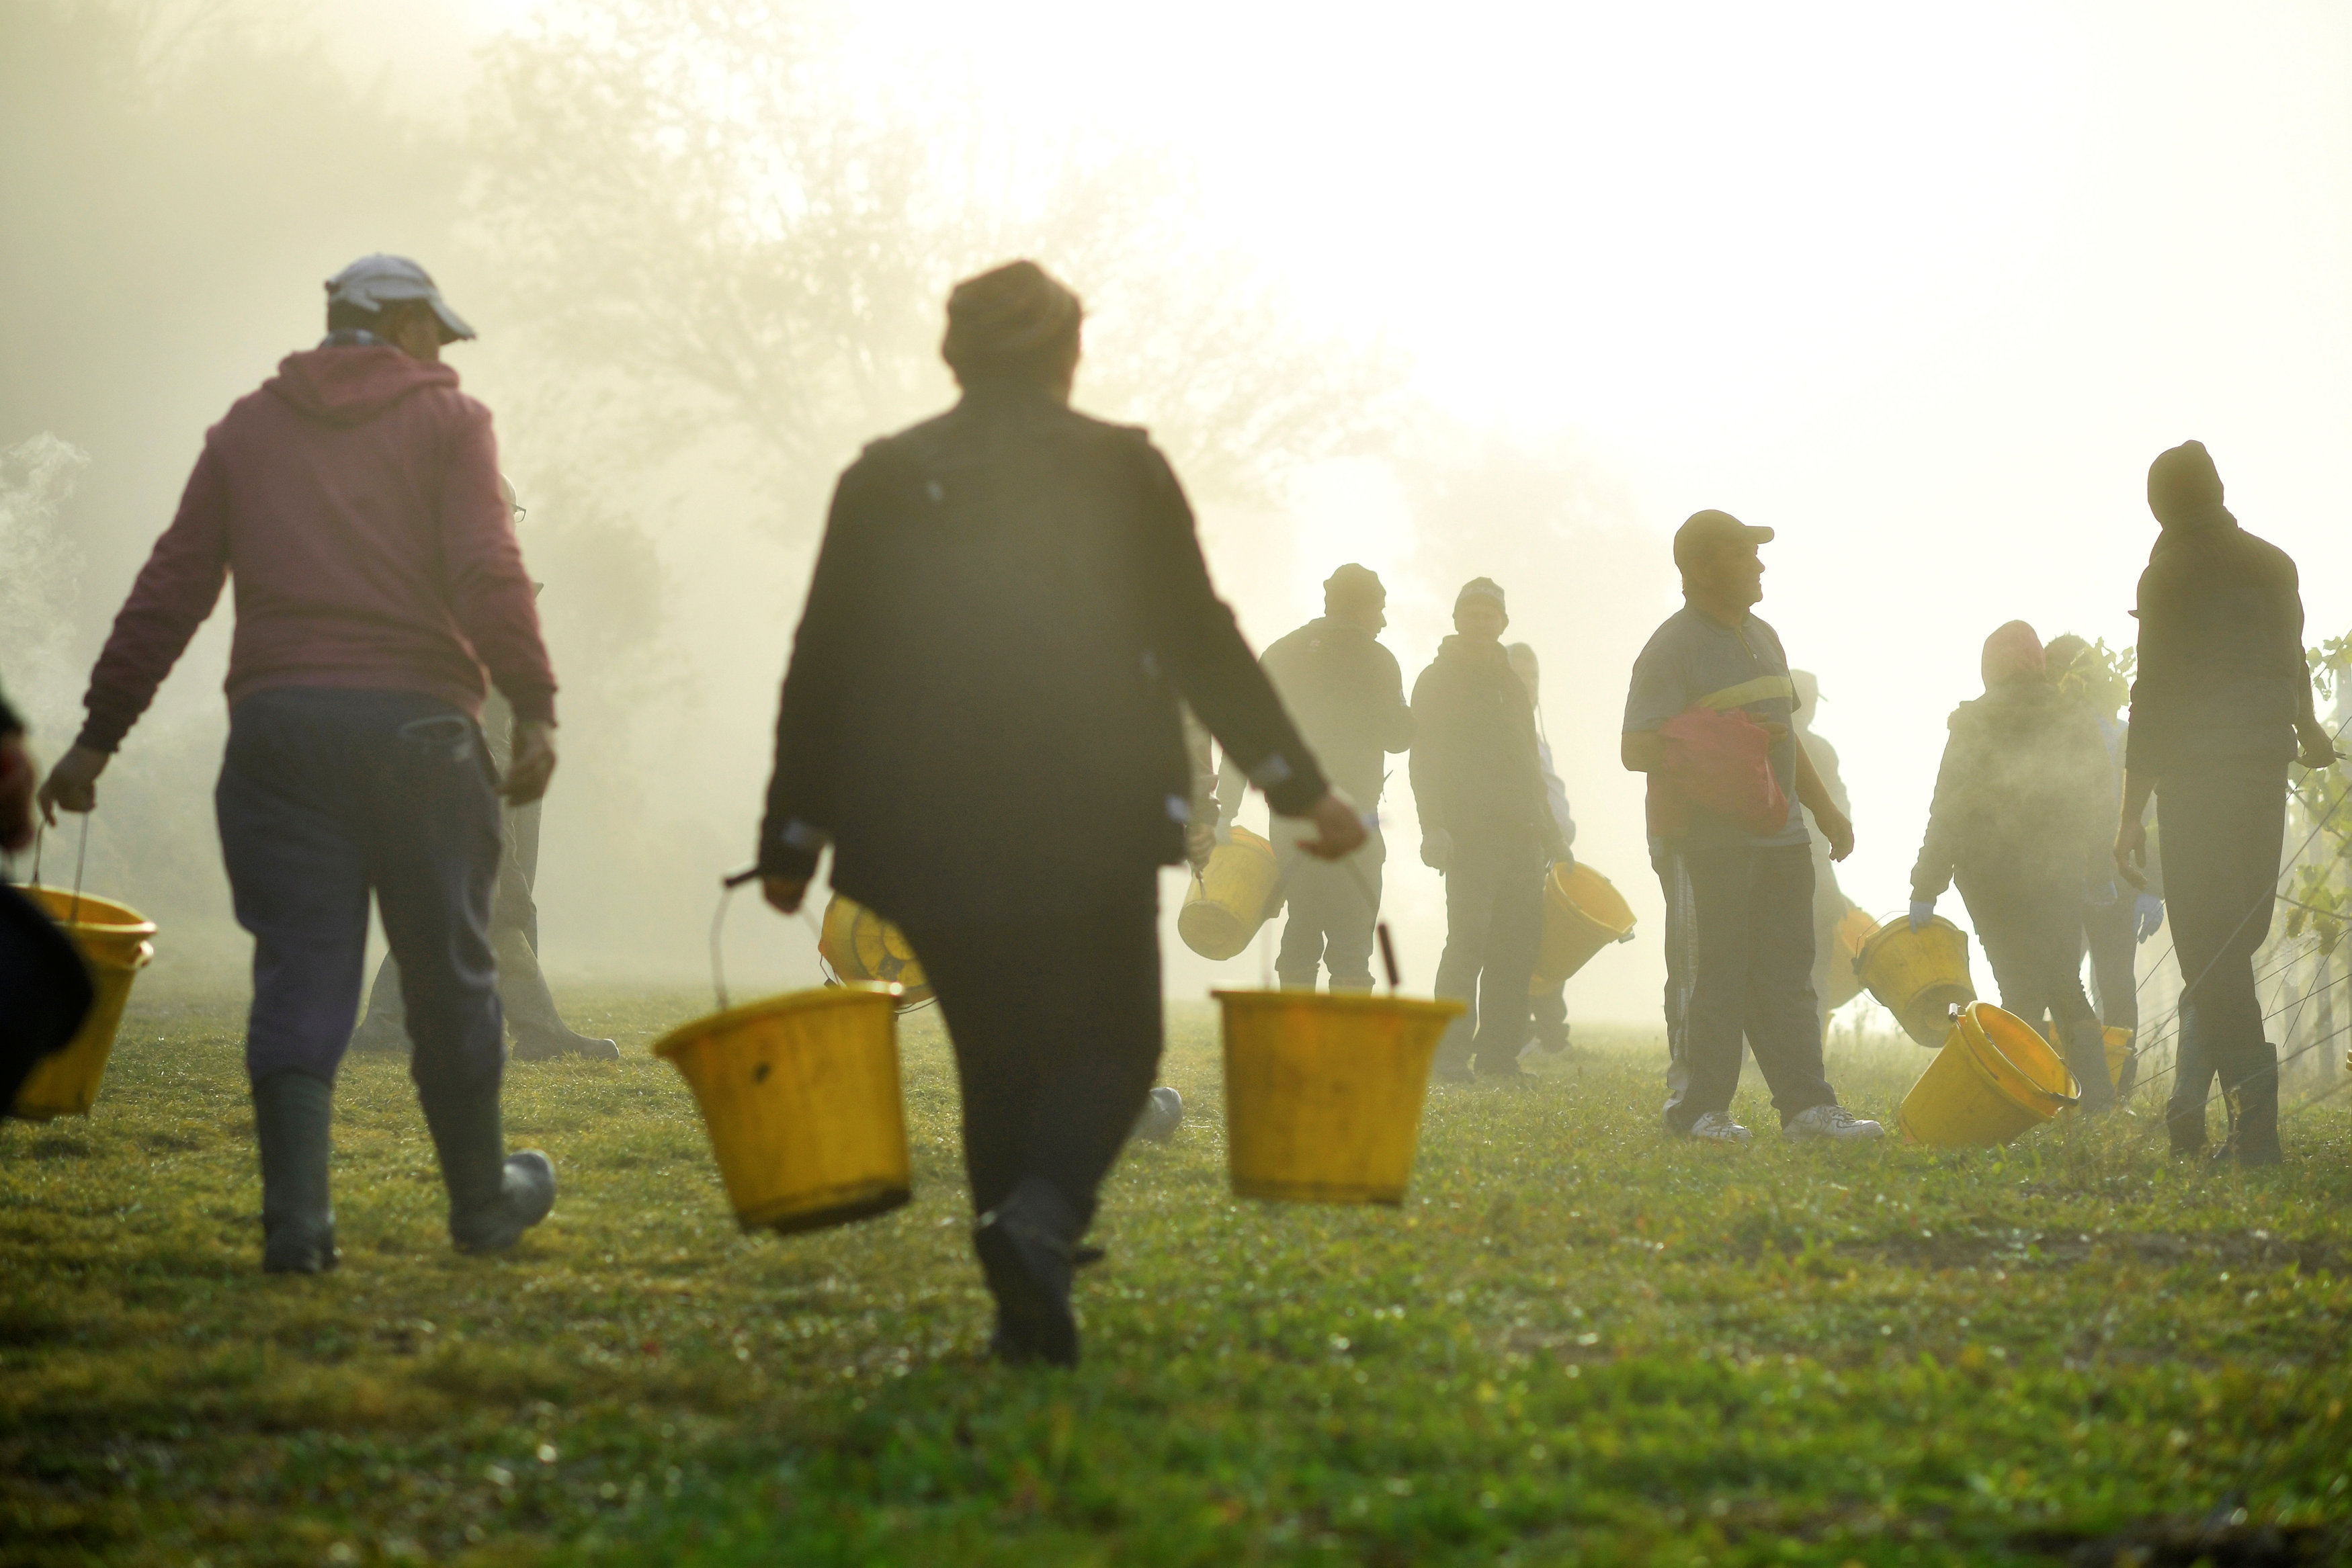 العمال فى طريقهم لجمع العنب بالمزارع